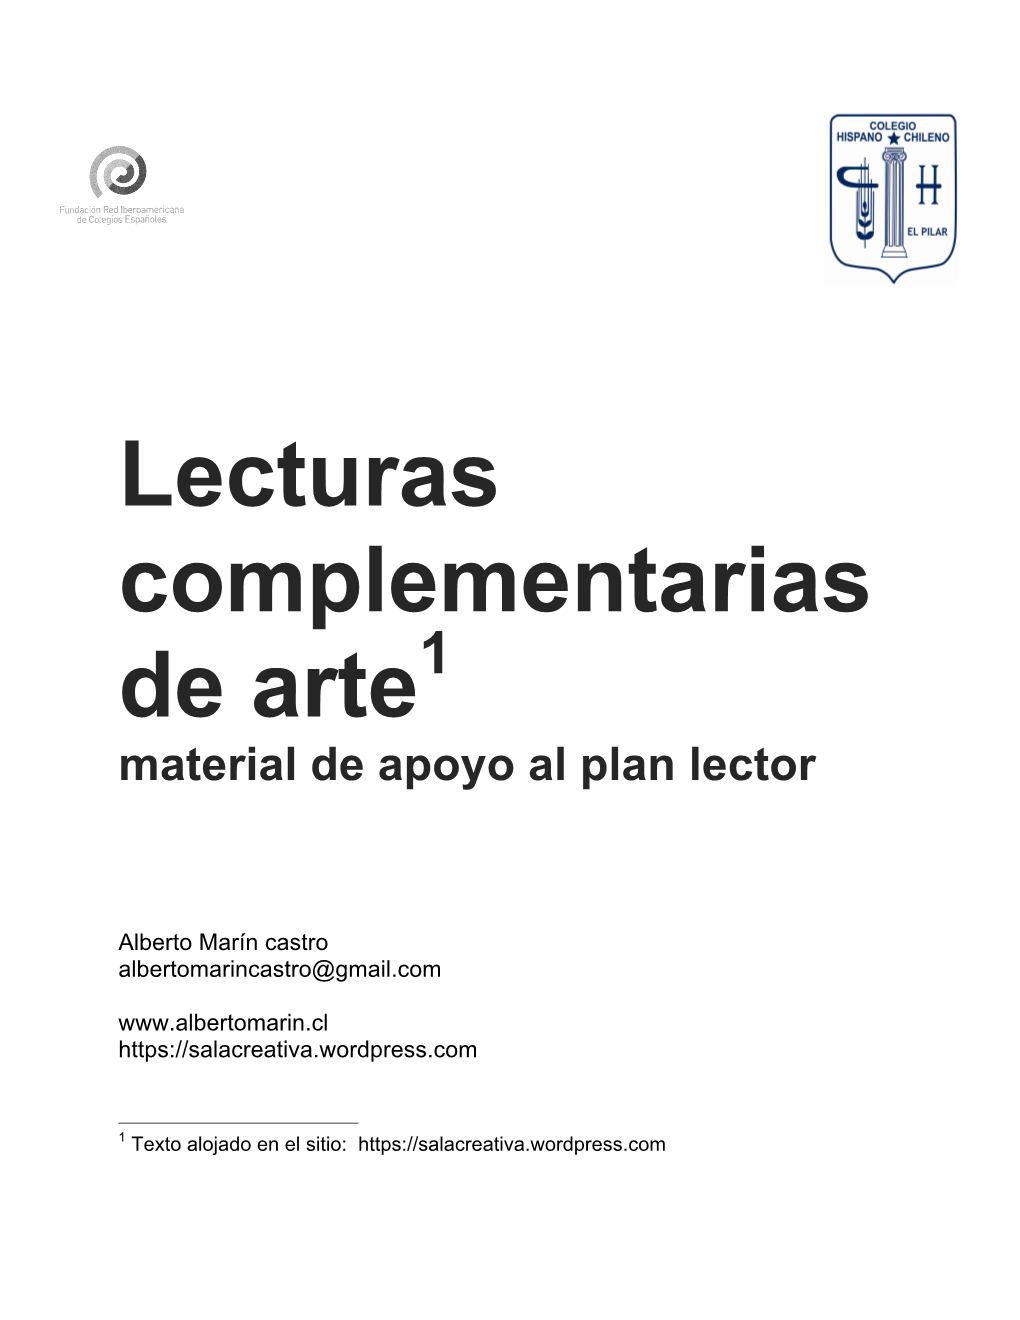 Lecturas Complementarias De Arte1 Material De Apoyo Al Plan Lector